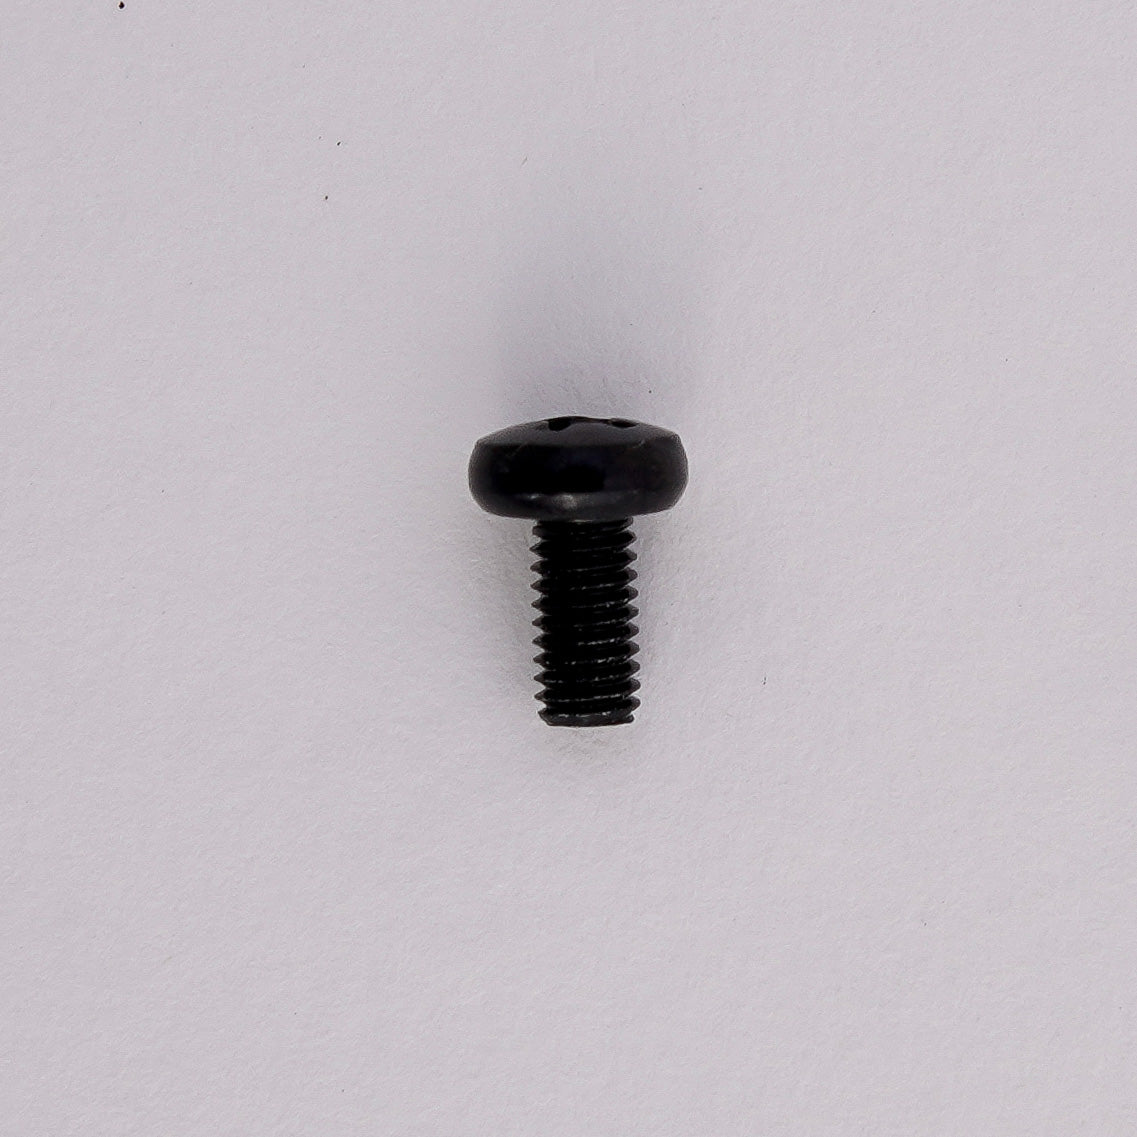 M3x6 module black screws (bag with 100 pieces)